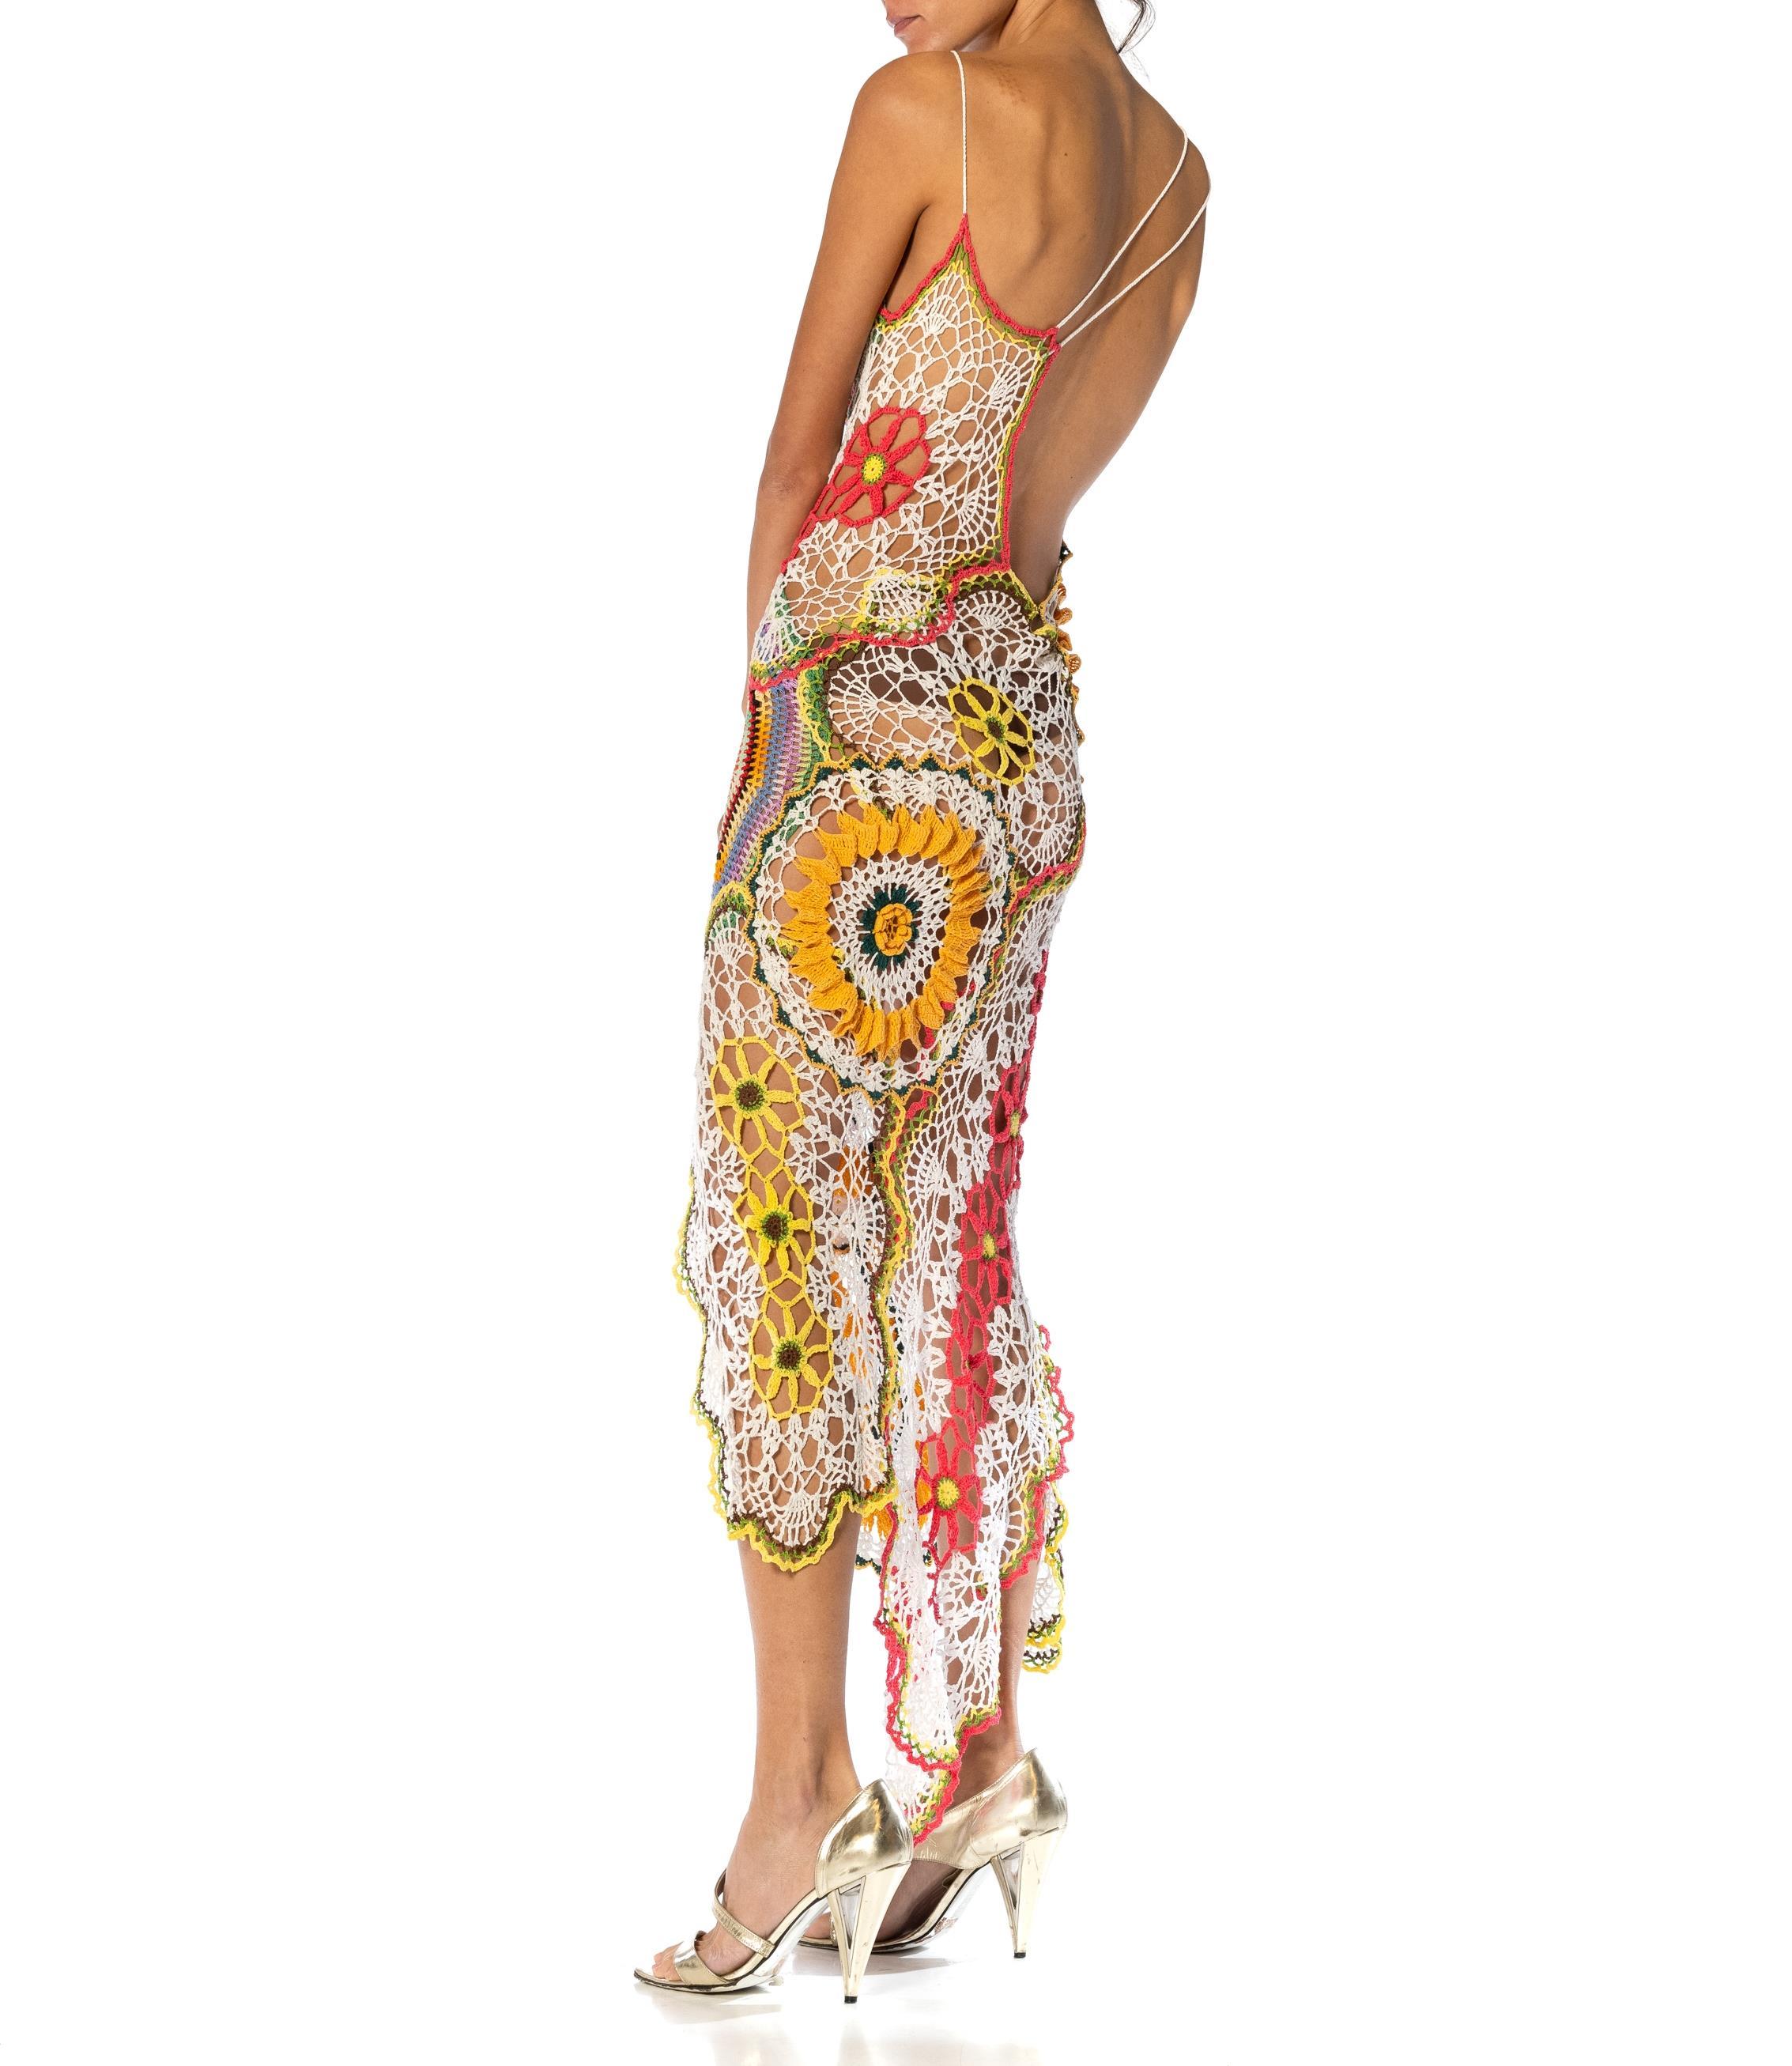 MORPHEW COLLECTION Multicolor Cotton Crochet Lace Dress For Sale 2